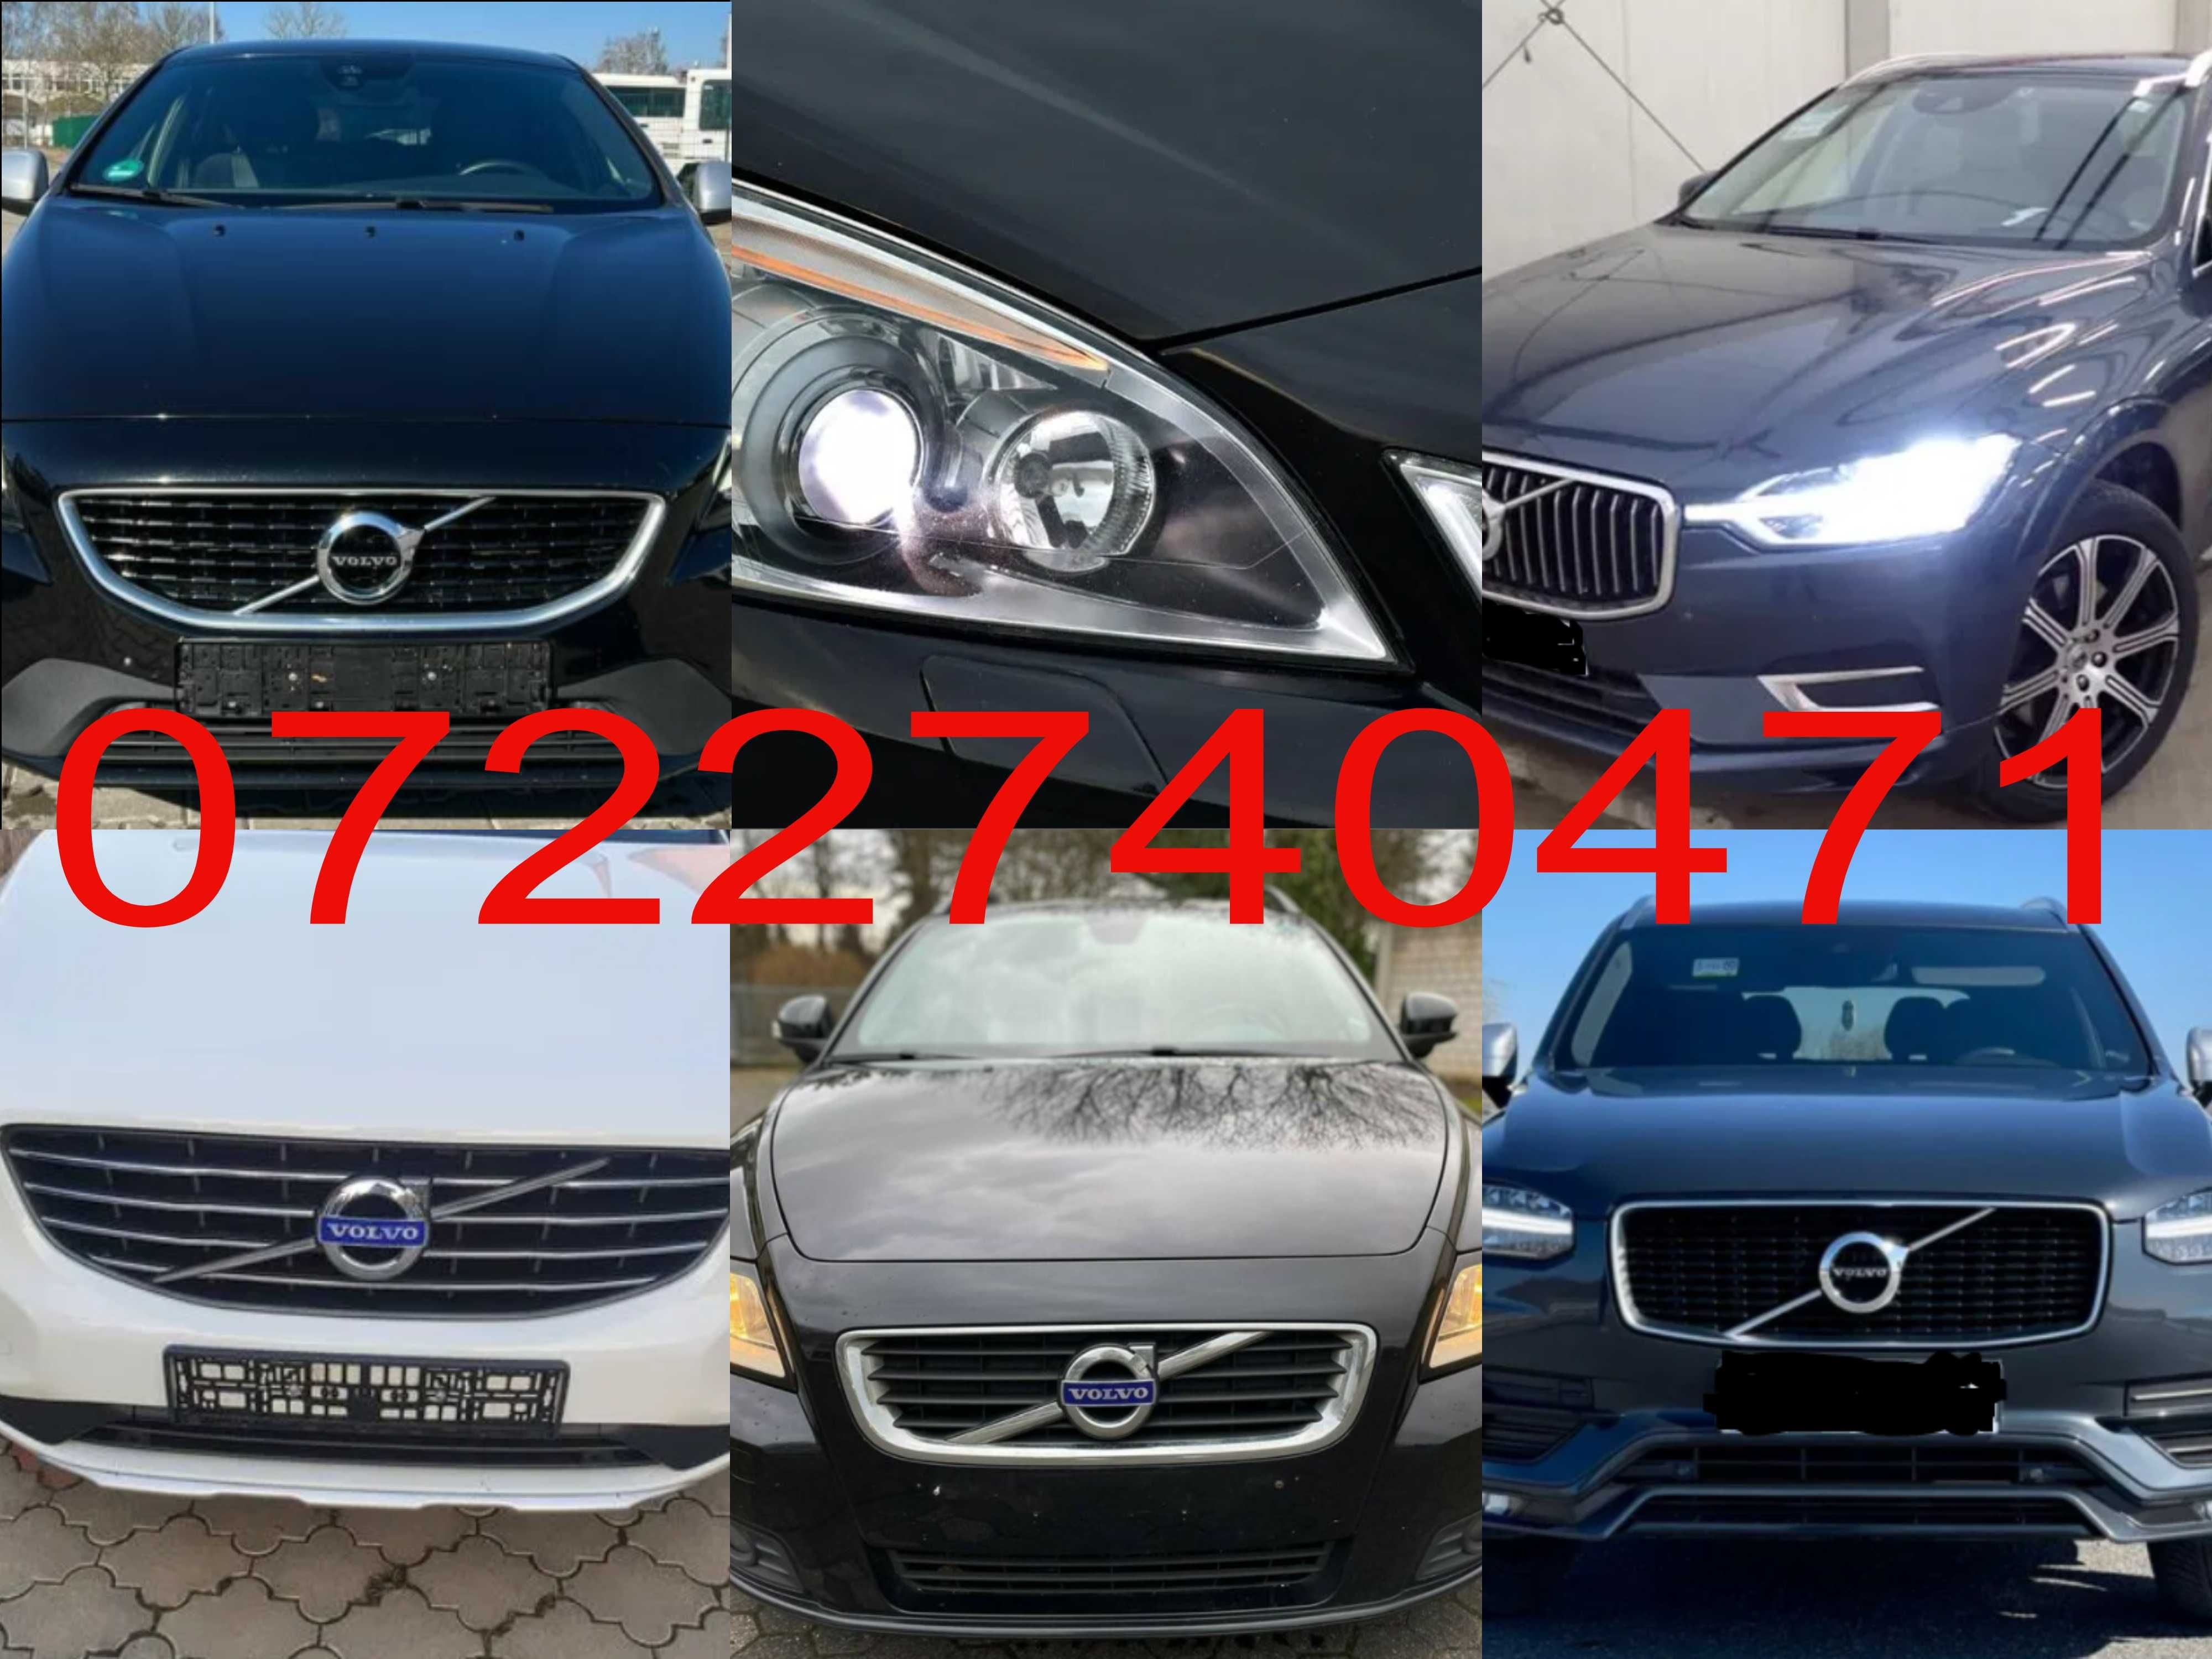 Pompa, Caseta, Motor, Bara Volvo C30,S40,S60,S80,V40,V50,V60,XC90,XC60